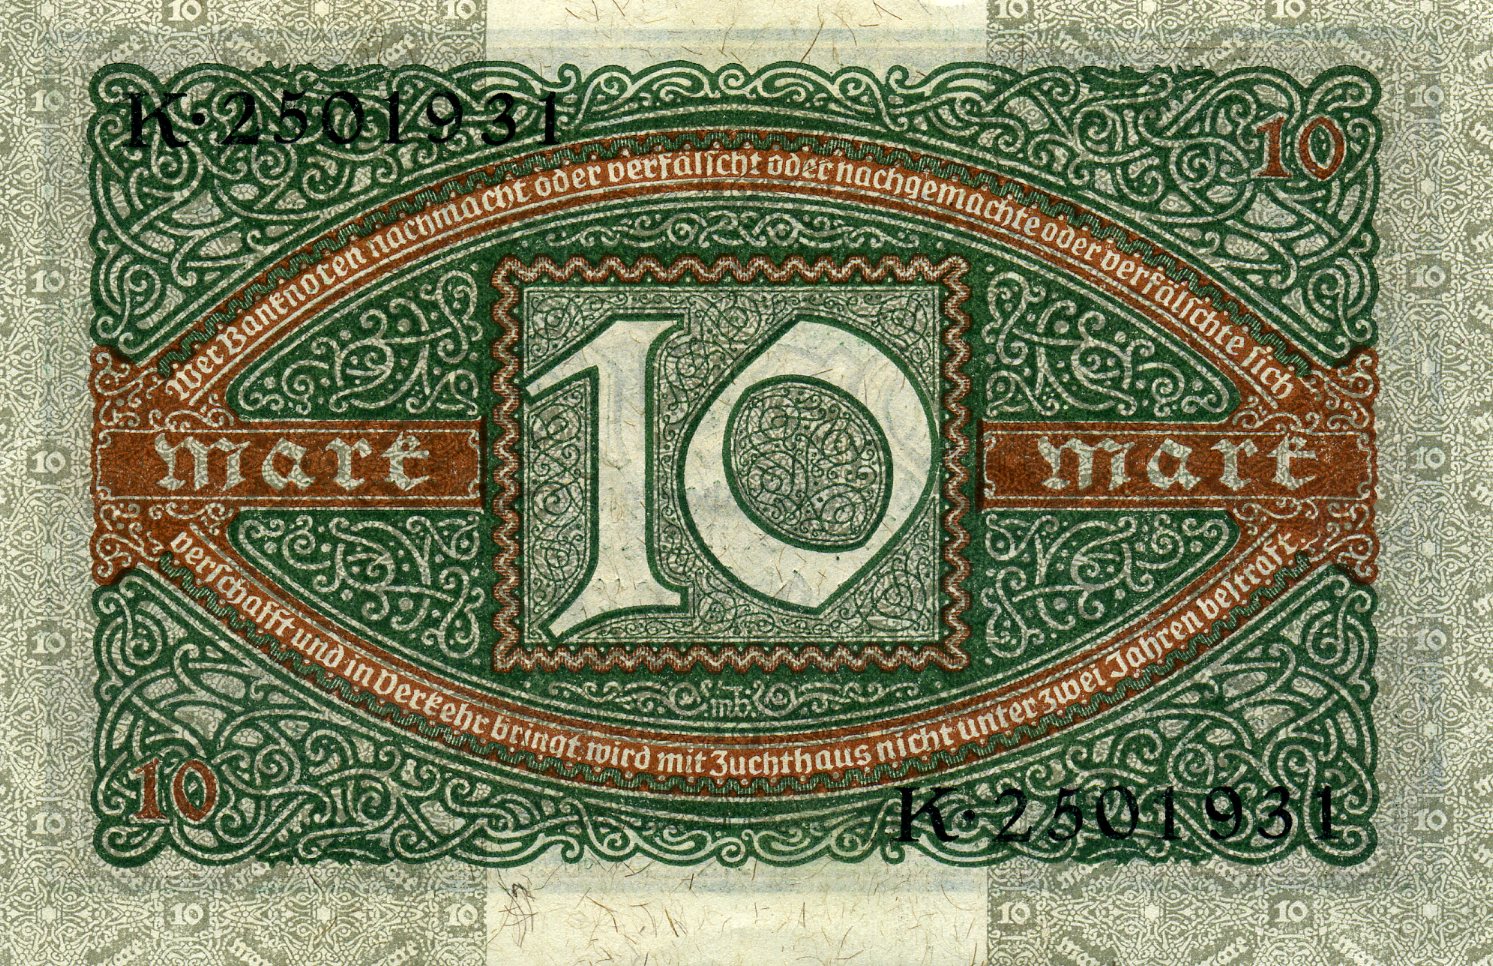 10 марок 6 февраля 1920 года. Реверс. Реферат Рефератович.